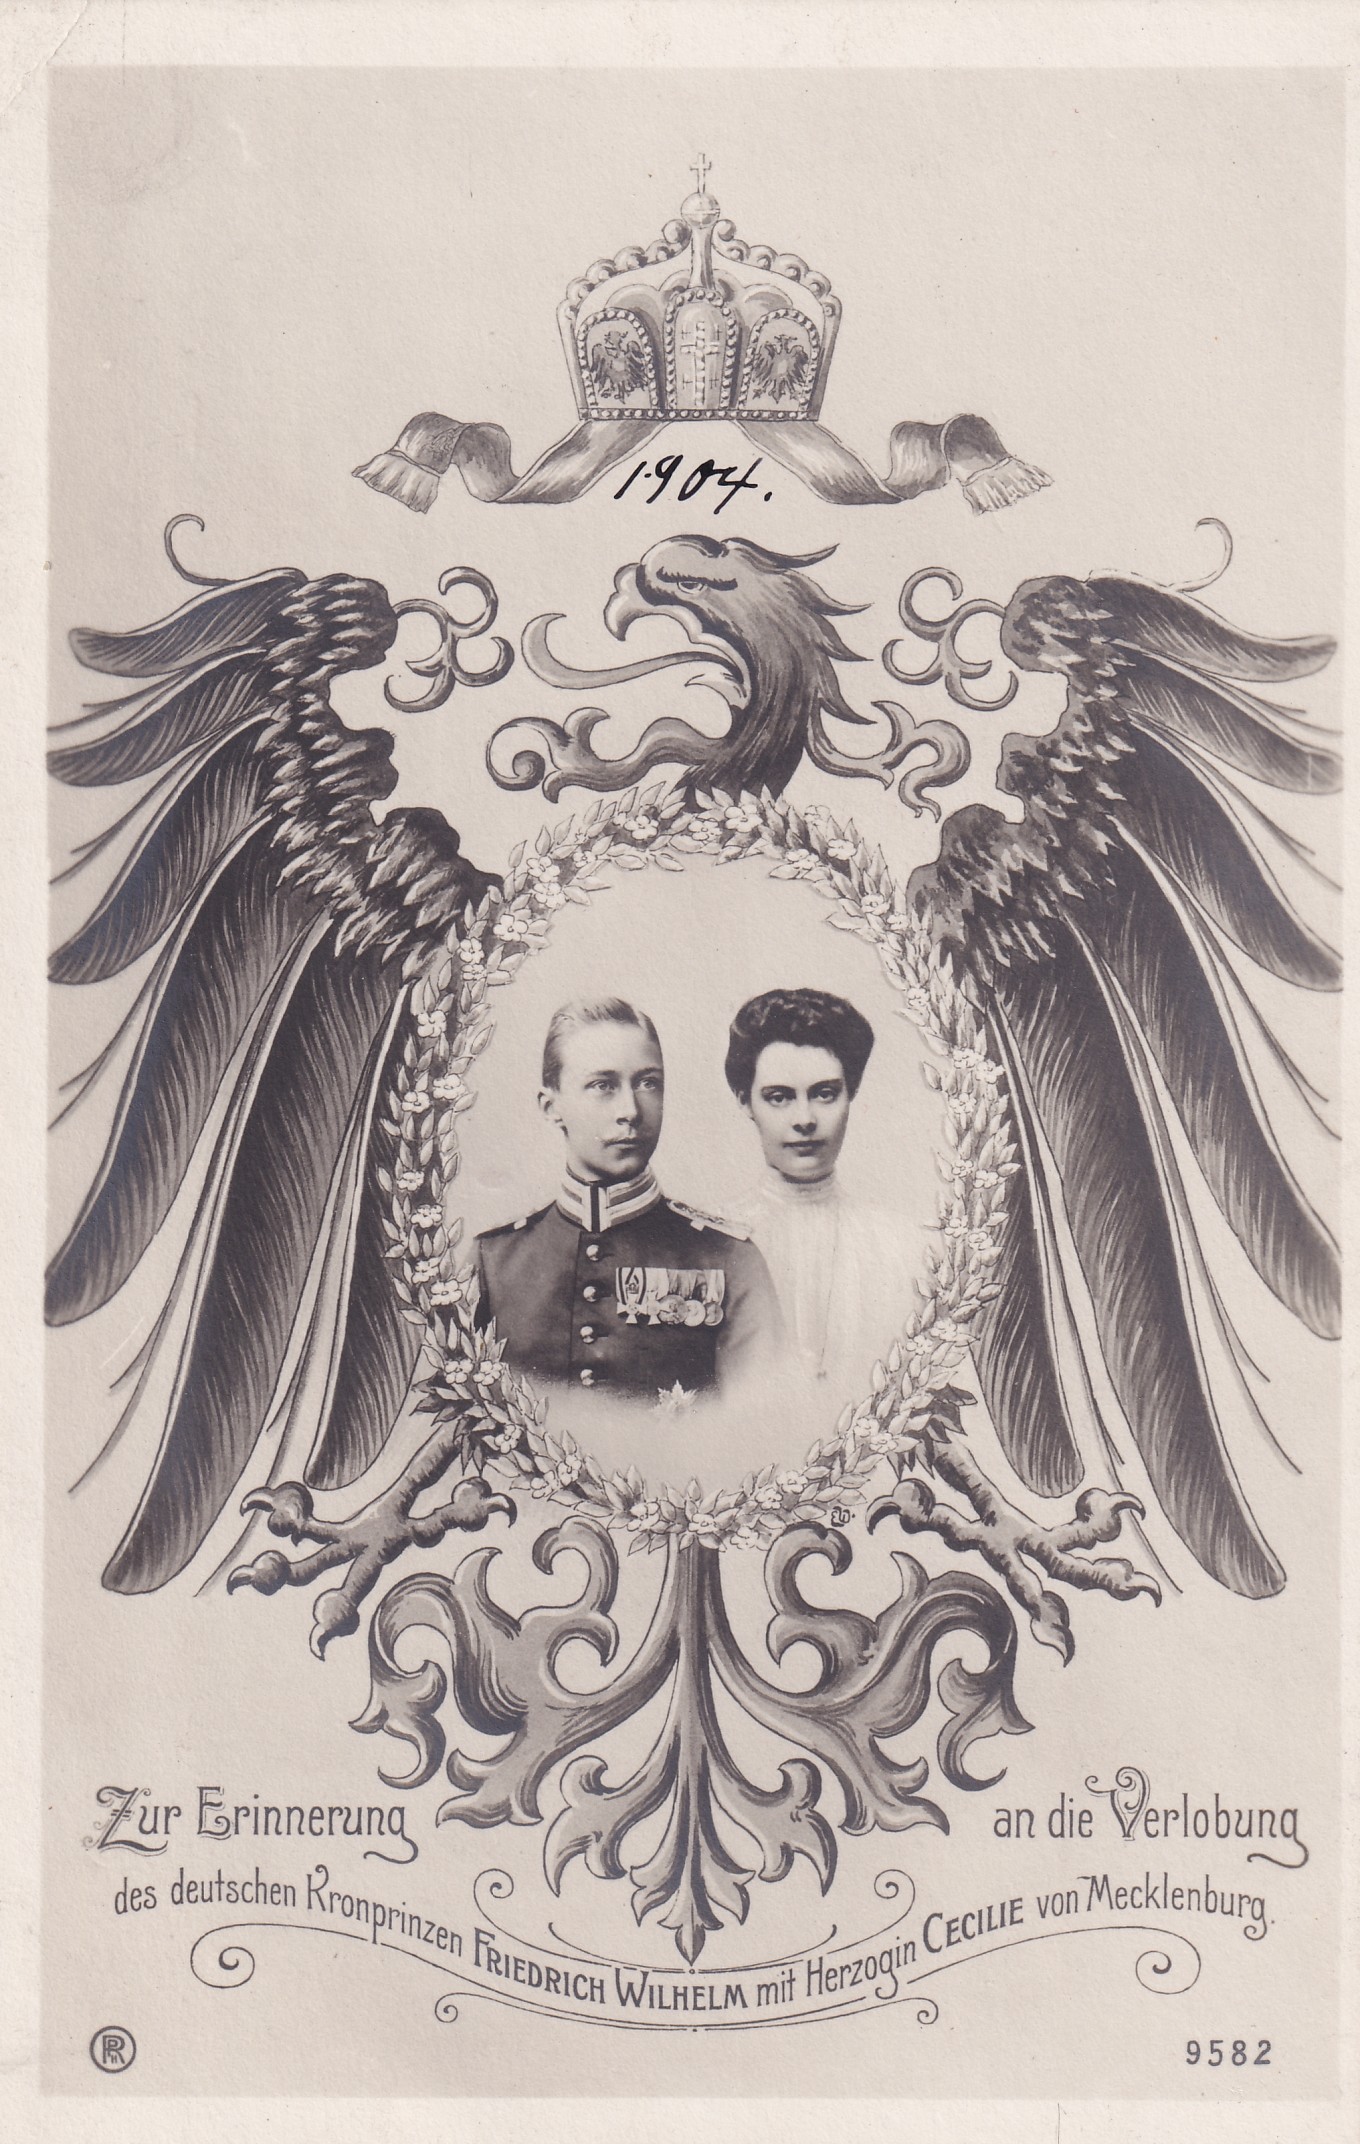 Bildpostkarte anlässlich der Verlobung des deutschen Kronprinzenpaares, 1904 (Schloß Wernigerode GmbH RR-F)